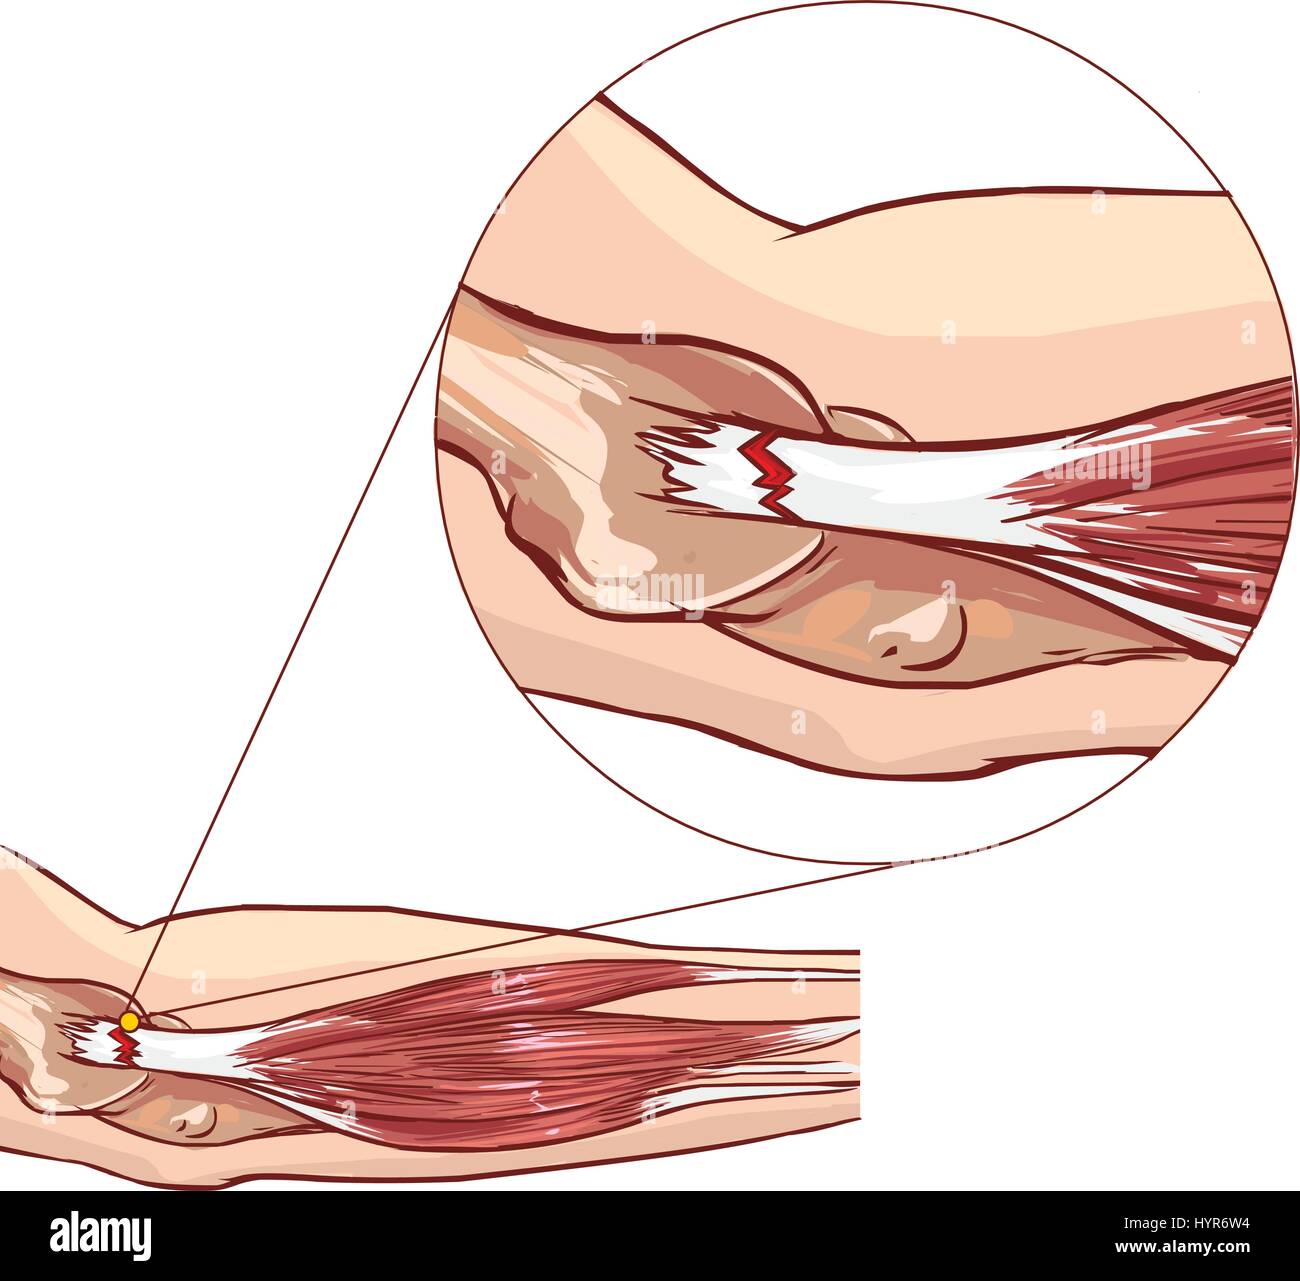 Tennisarm - Riss in der gemeinsamen Beinstrecker Sehne des Arms Stock Vektor